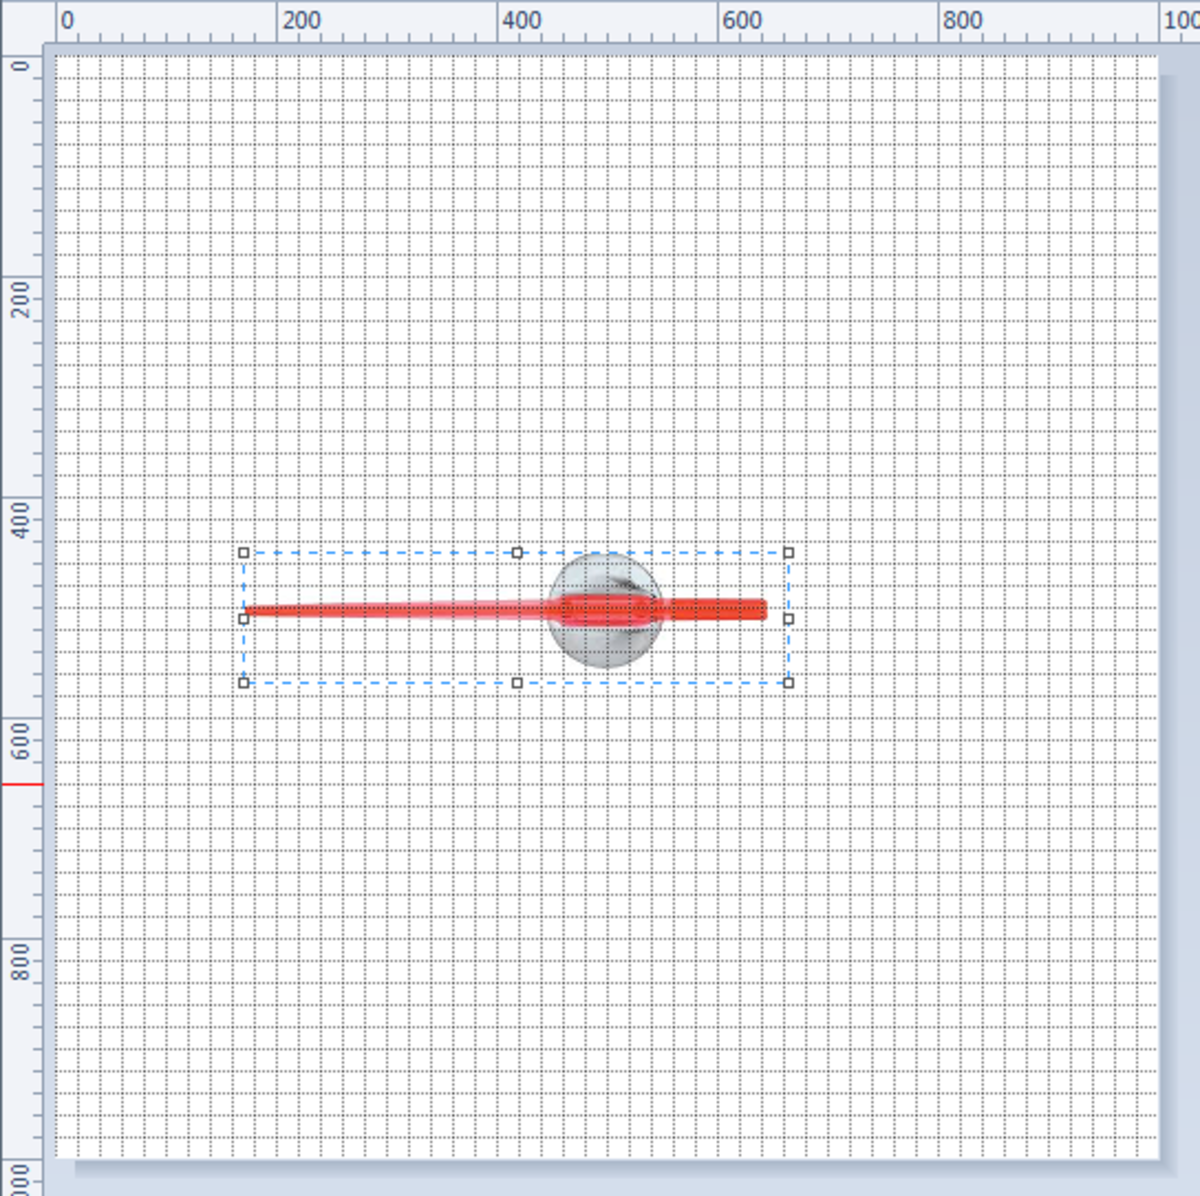 Speedometer Chart In Excel 2007